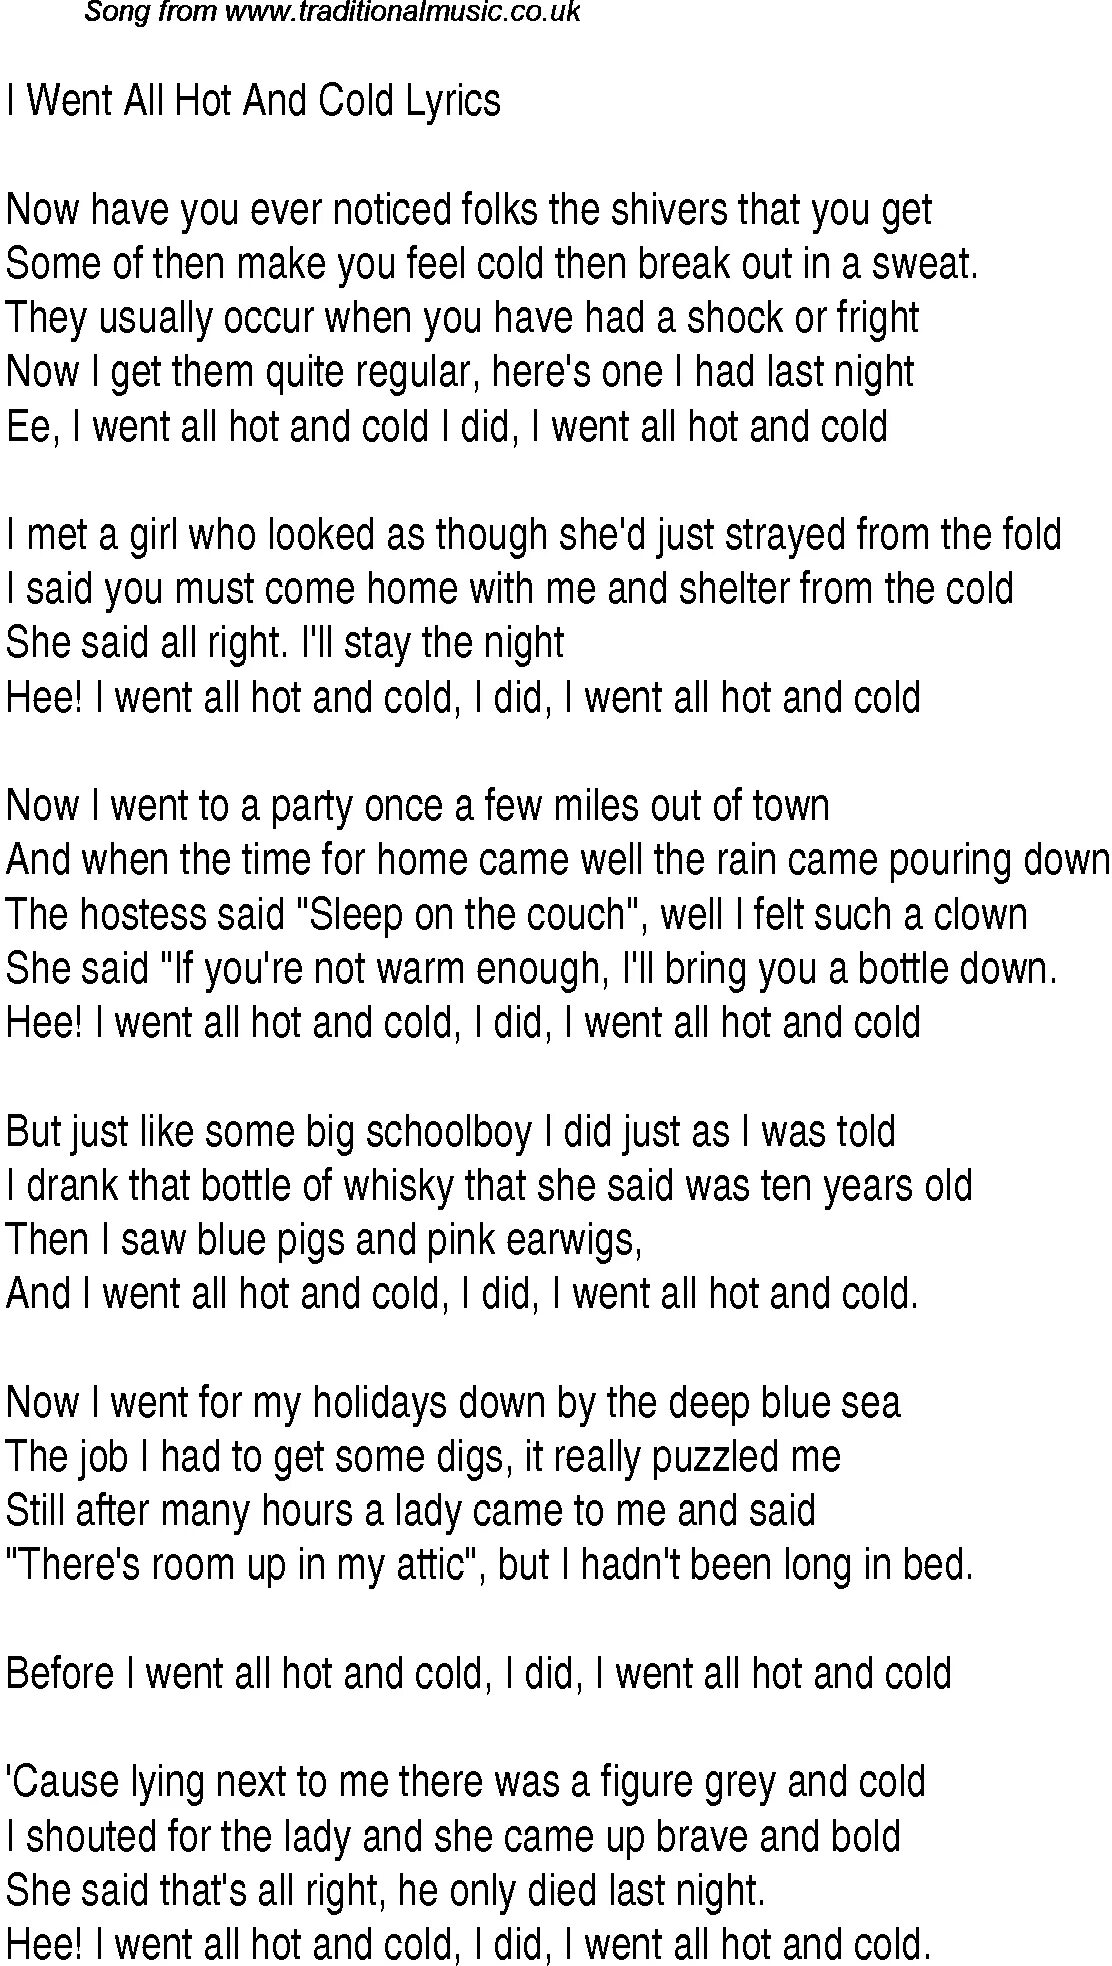 Песня hot cold. Cold текст. Hot n Cold текст. Слова песни hot n Cold. Hot and Cold песня.